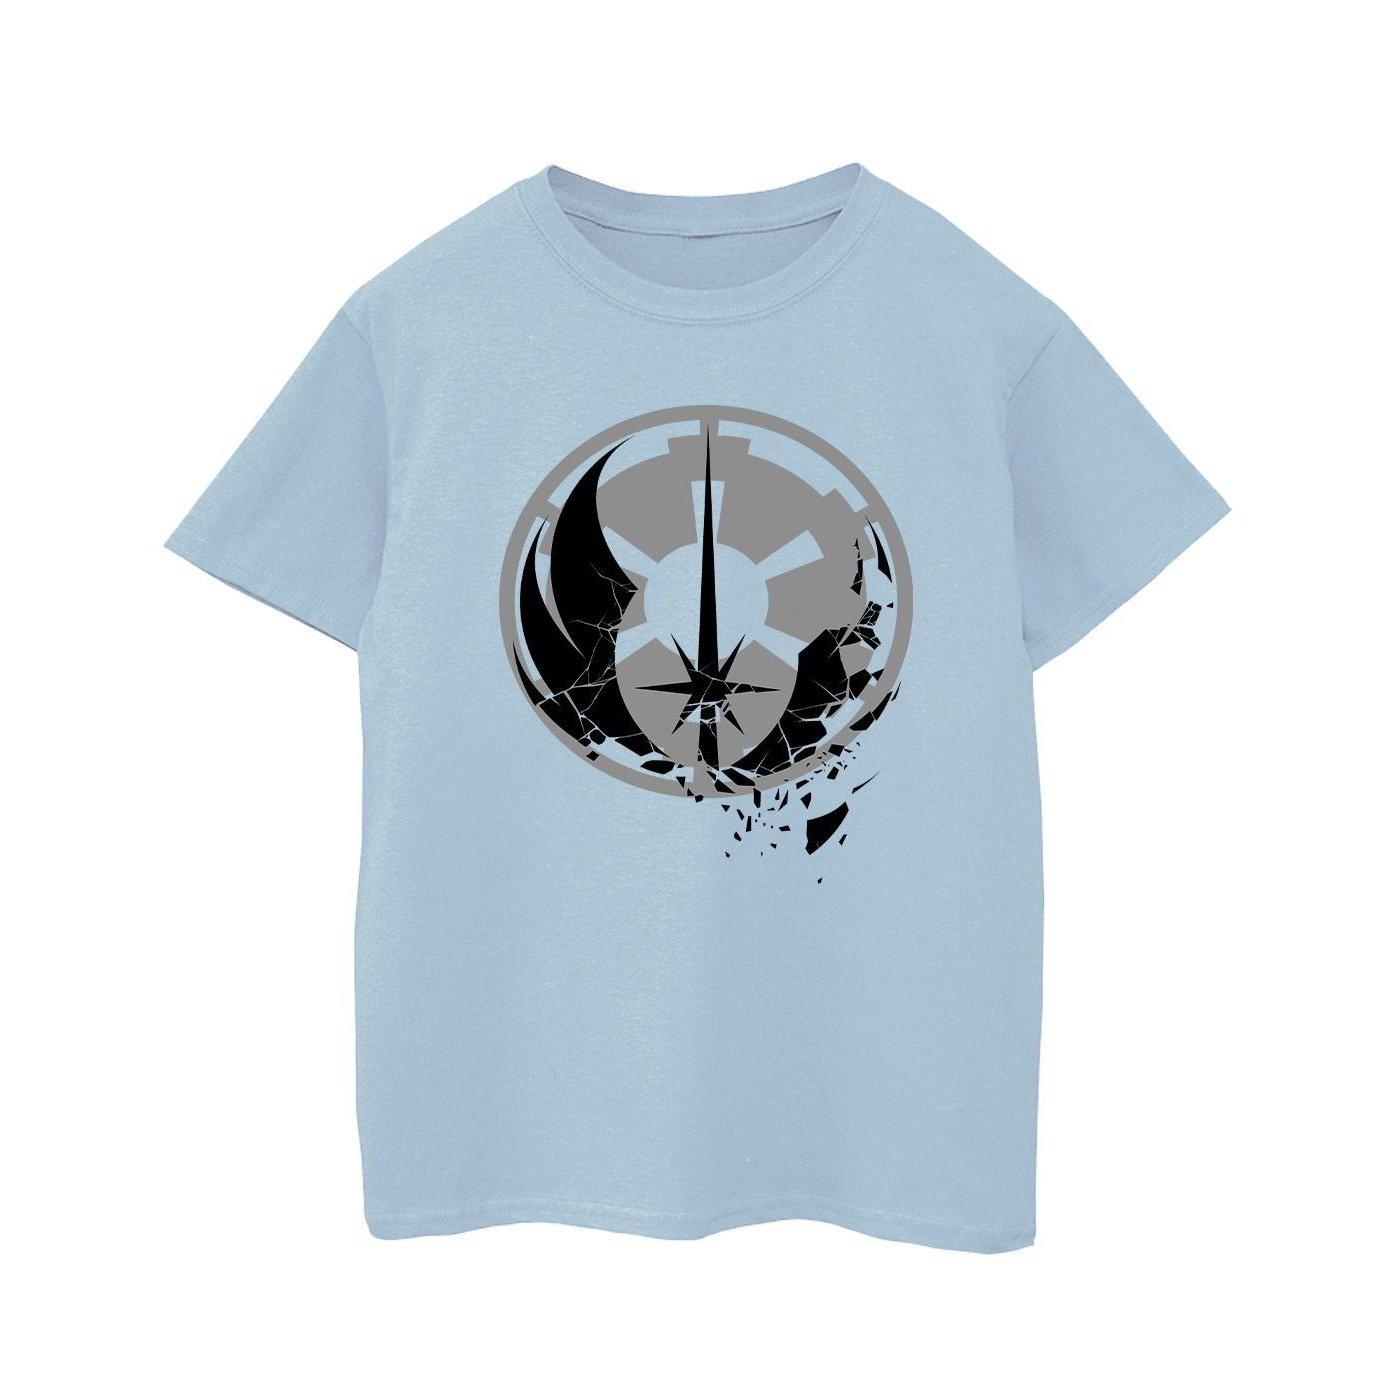 Obiwan Kenobi Fractured Logos Tshirt Jungen Blau 104 von STAR WARS